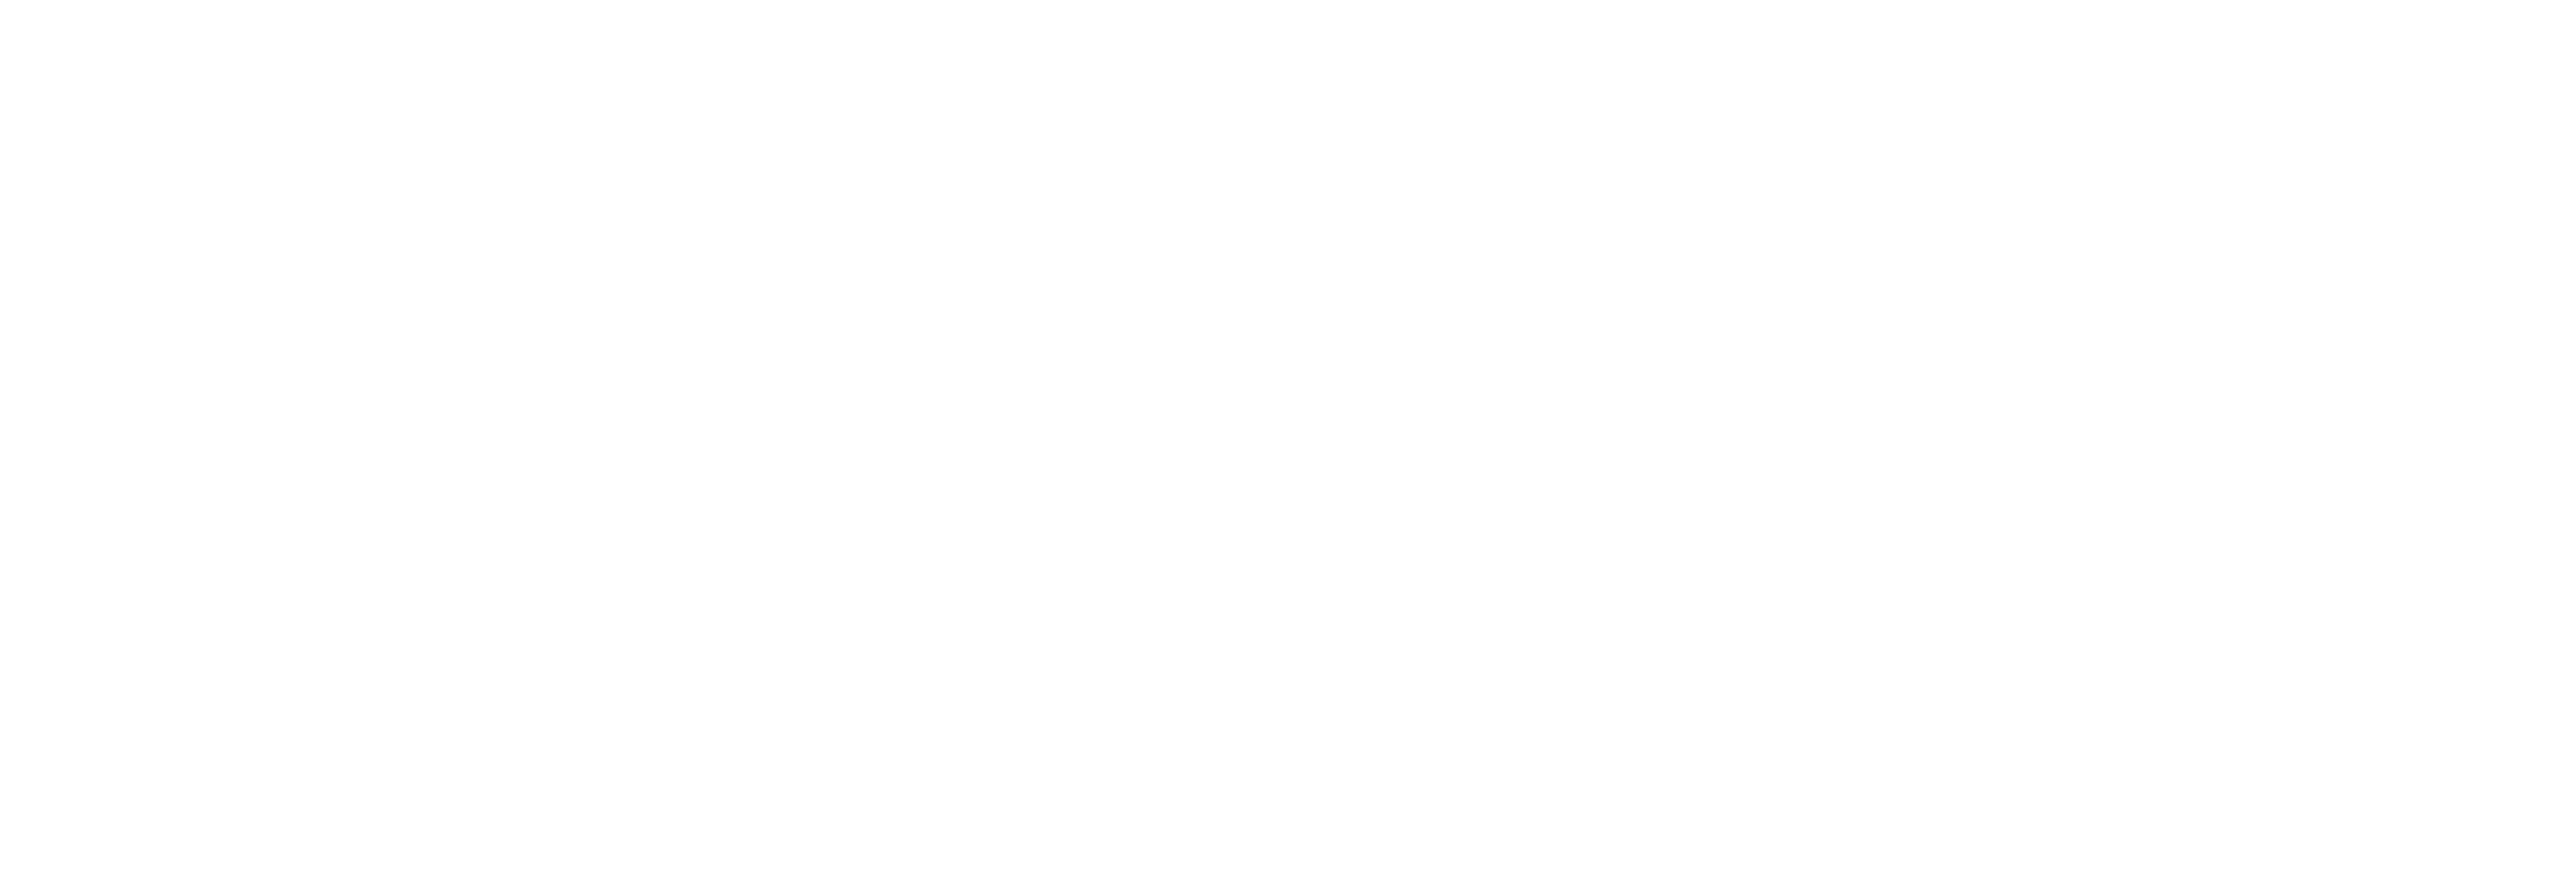 Freecontractz